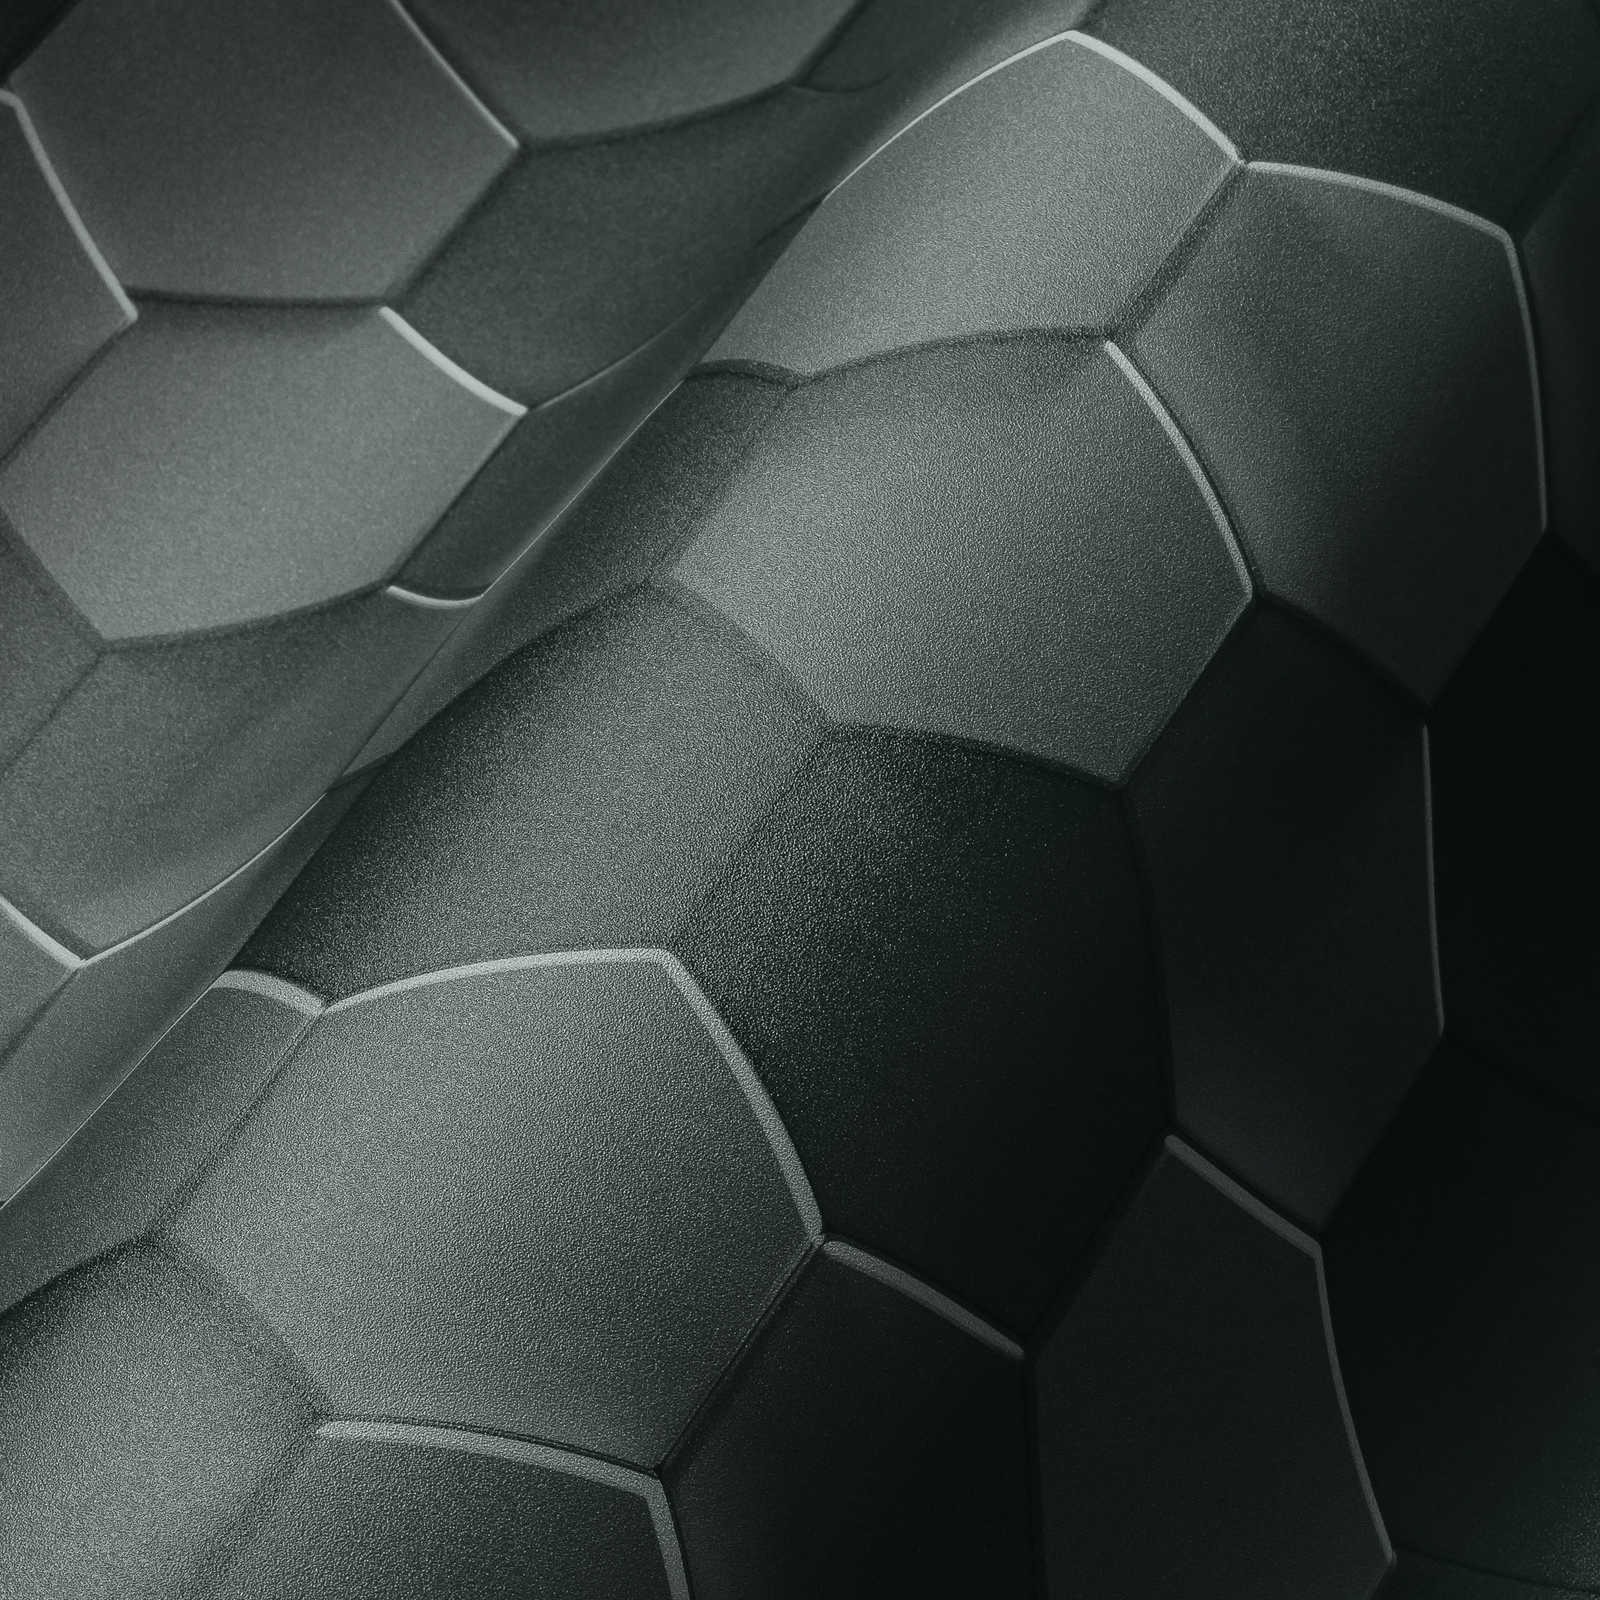             Papier peint hexagonal 3D motif graphique nid d'abeille - gris, noir
        